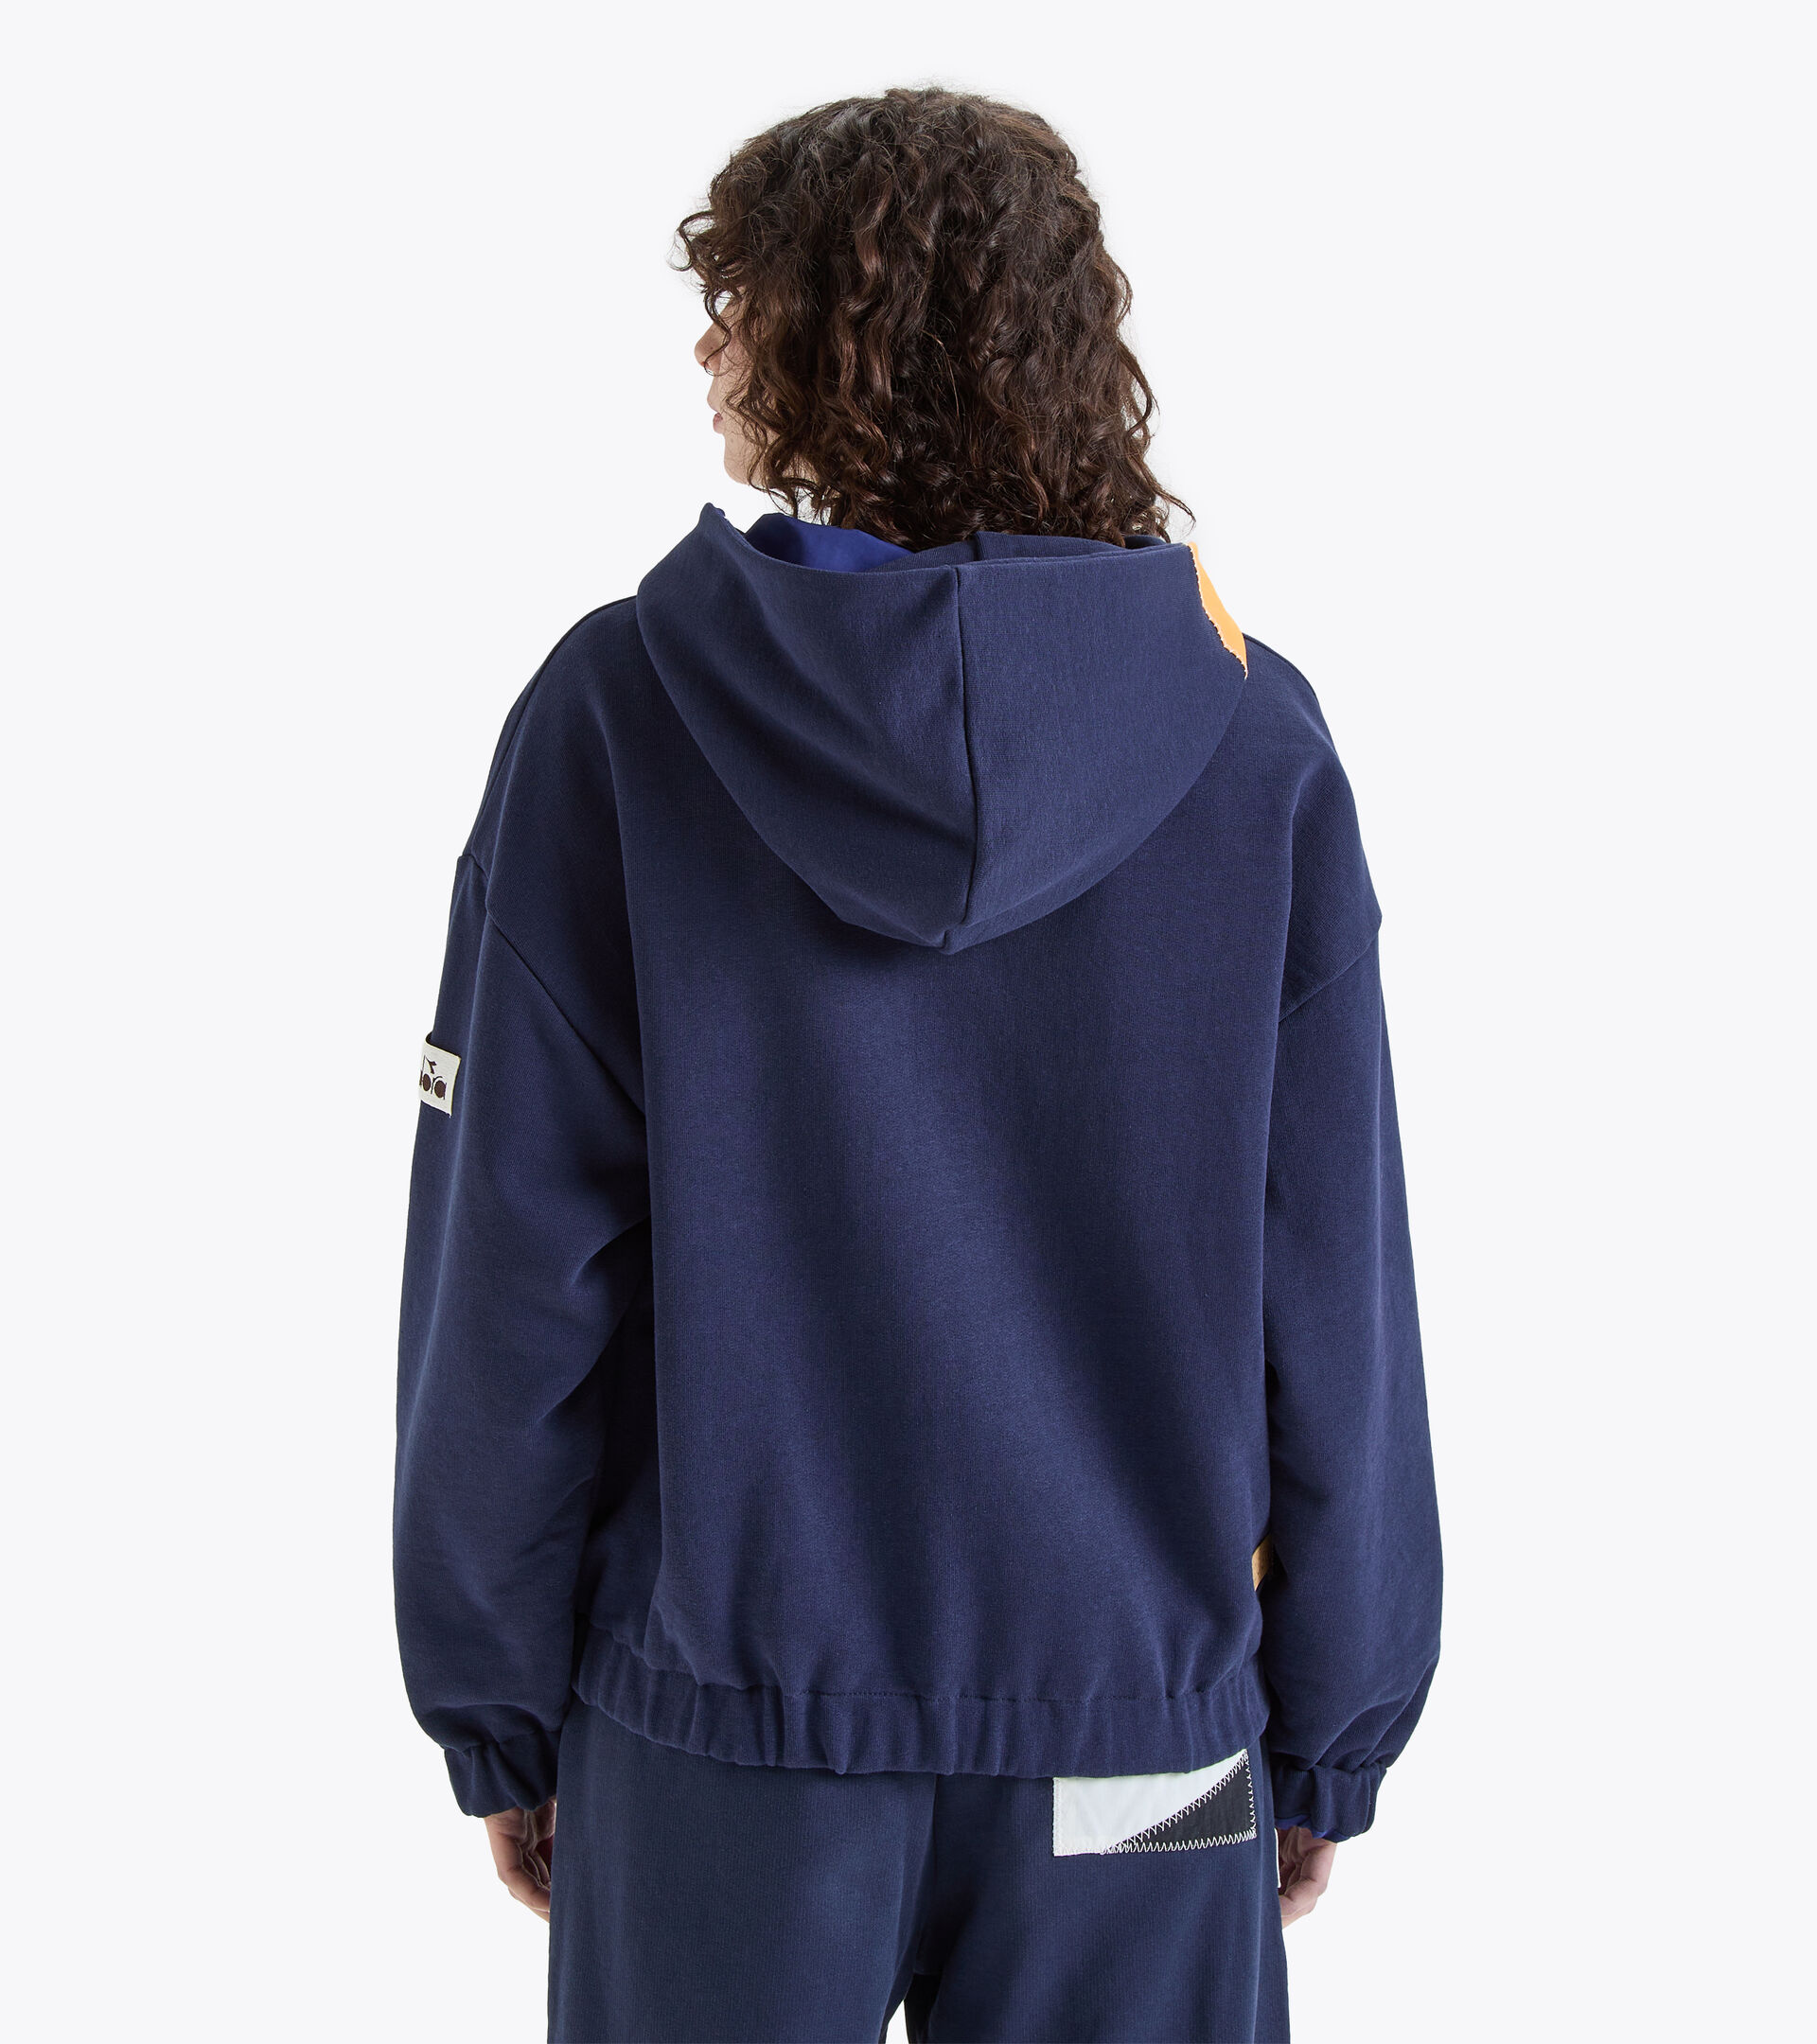 2030 full-zip hoodie Made in Italy - Women L. FZ HOODIE REVERSIBLE 2030 BLUE CORSAIR - Diadora